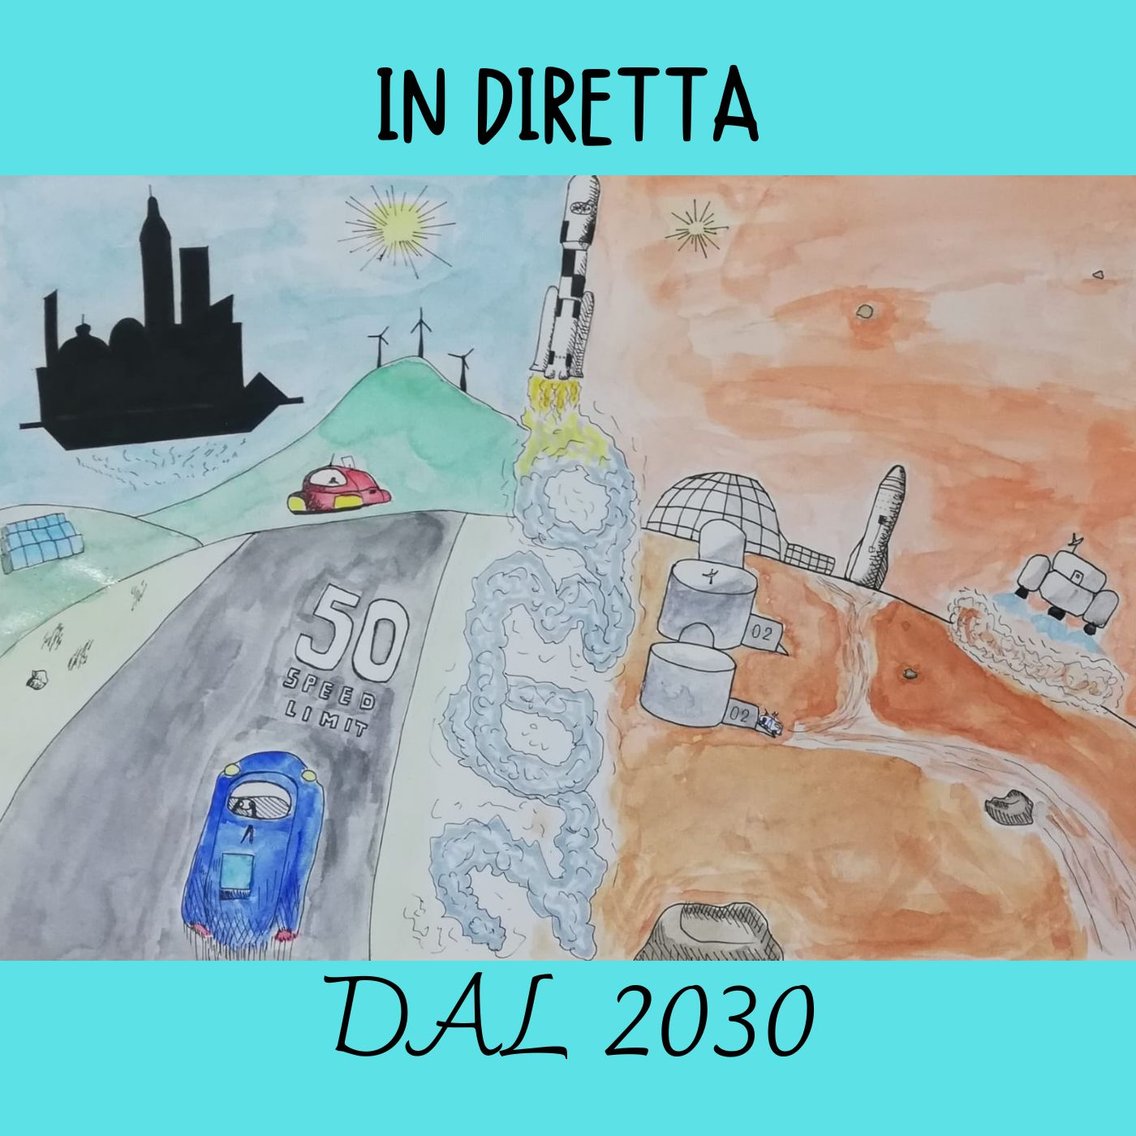 IN DIRETTA DAL 2030 - Cover Image